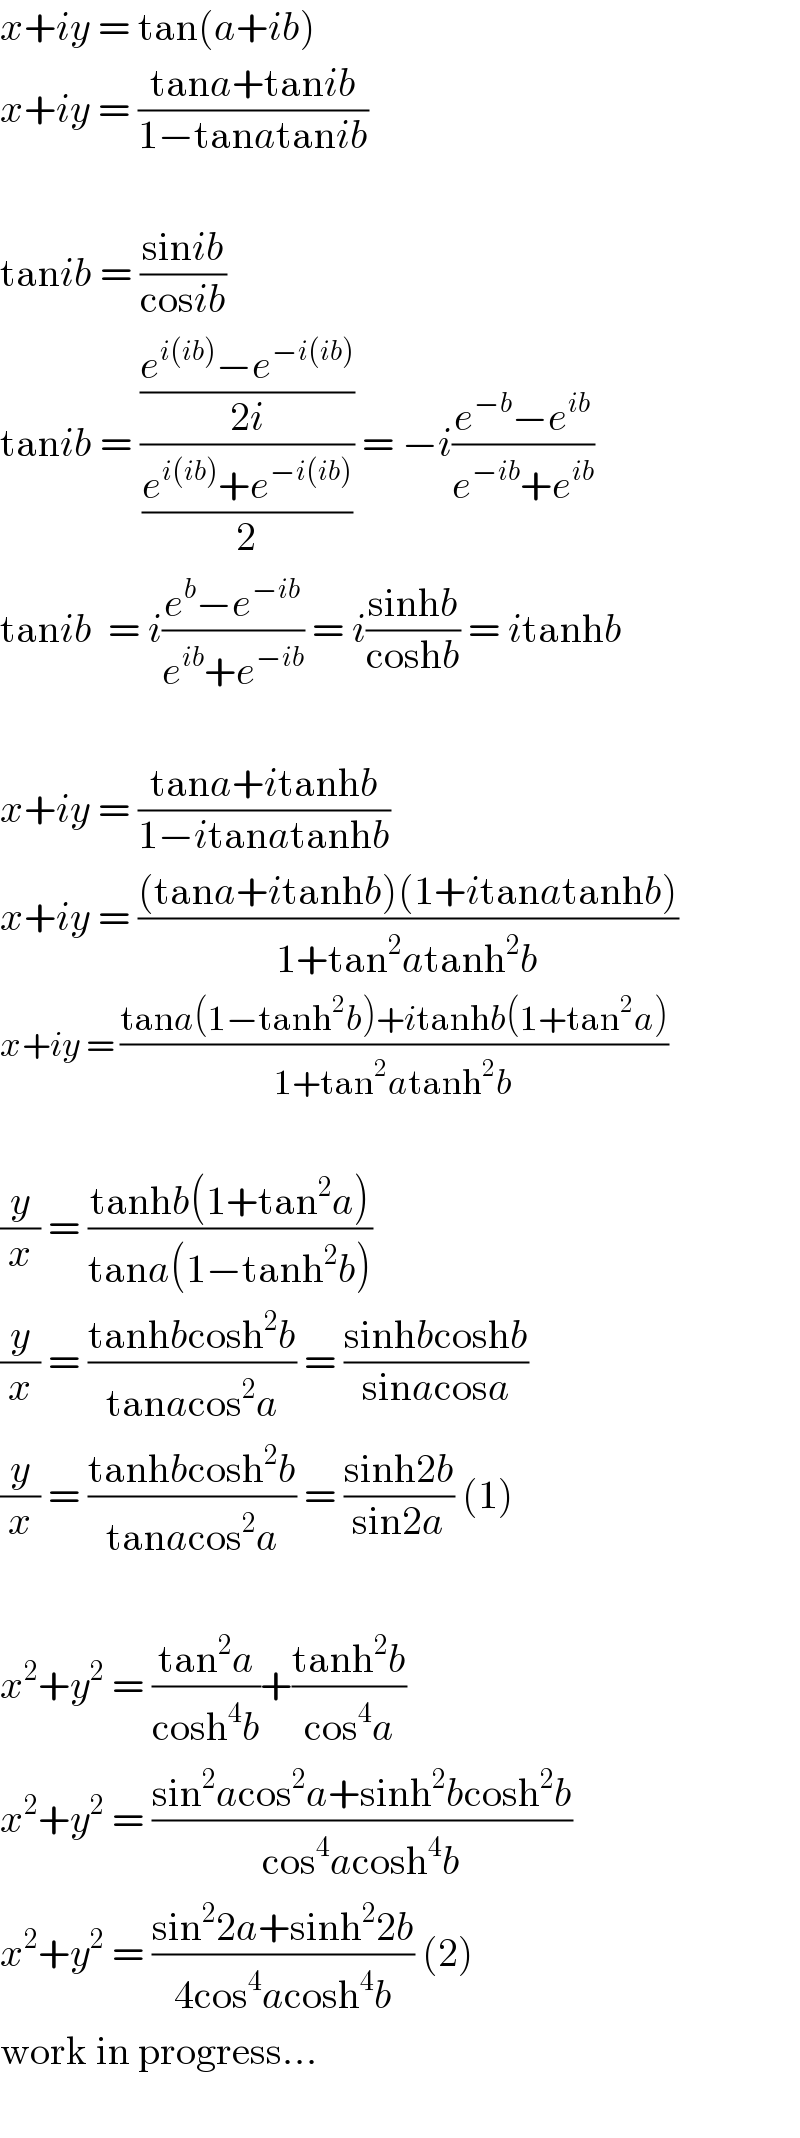 x+iy = tan(a+ib)  x+iy = ((tana+tanib)/(1−tanatanib))    tanib = ((sinib)/(cosib))  tanib = (((e^(i(ib)) −e^(−i(ib)) )/(2i))/((e^(i(ib)) +e^(−i(ib)) )/2)) = −i((e^(−b) −e^(ib) )/(e^(−ib) +e^(ib) ))  tanib  = i((e^b −e^(−ib) )/(e^(ib) +e^(−ib) )) = i((sinhb)/(coshb)) = itanhb    x+iy = ((tana+itanhb)/(1−itanatanhb))  x+iy = (((tana+itanhb)(1+itanatanhb))/(1+tan^2 atanh^2 b))  x+iy = ((tana(1−tanh^2 b)+itanhb(1+tan^2 a))/(1+tan^2 atanh^2 b))    (y/x) = ((tanhb(1+tan^2 a))/(tana(1−tanh^2 b)))  (y/x) = ((tanhbcosh^2 b)/(tanacos^2 a)) = ((sinhbcoshb)/(sinacosa))  (y/x) = ((tanhbcosh^2 b)/(tanacos^2 a)) = ((sinh2b)/(sin2a)) (1)    x^2 +y^2  = ((tan^2 a)/(cosh^4 b))+((tanh^2 b)/(cos^4 a))  x^2 +y^2  = ((sin^2 acos^2 a+sinh^2 bcosh^2 b)/(cos^4 acosh^4 b))  x^2 +y^2  = ((sin^2 2a+sinh^2 2b)/(4cos^4 acosh^4 b)) (2)  work in progress...    